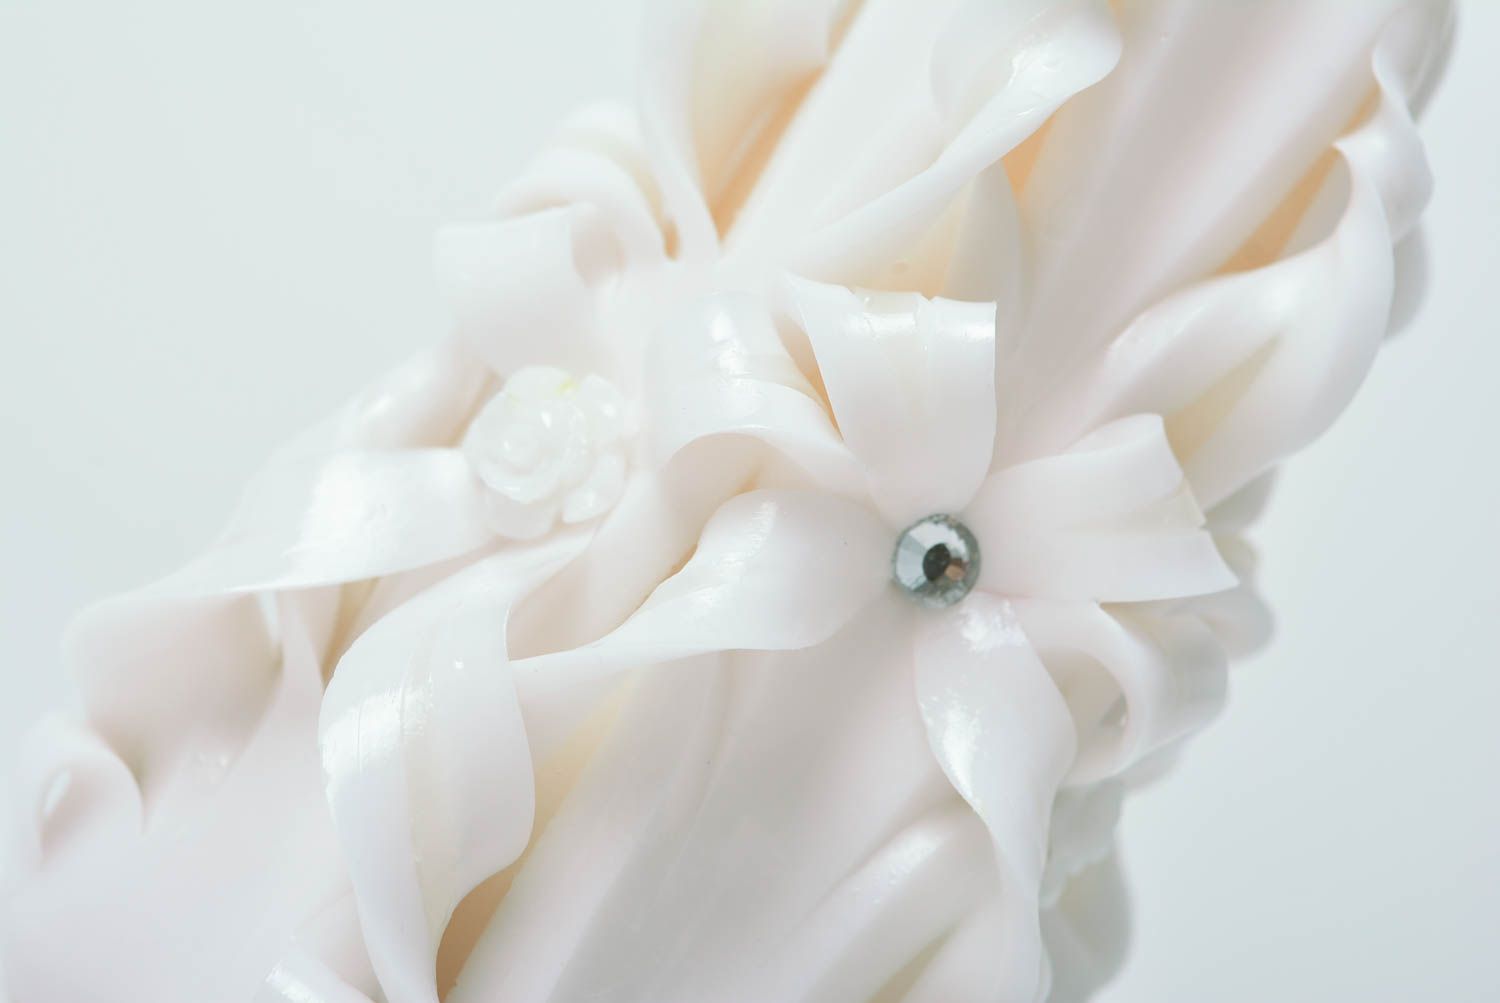 Bougie blanche sculptée faite main en paraffine décorée de strass pour mariage photo 2